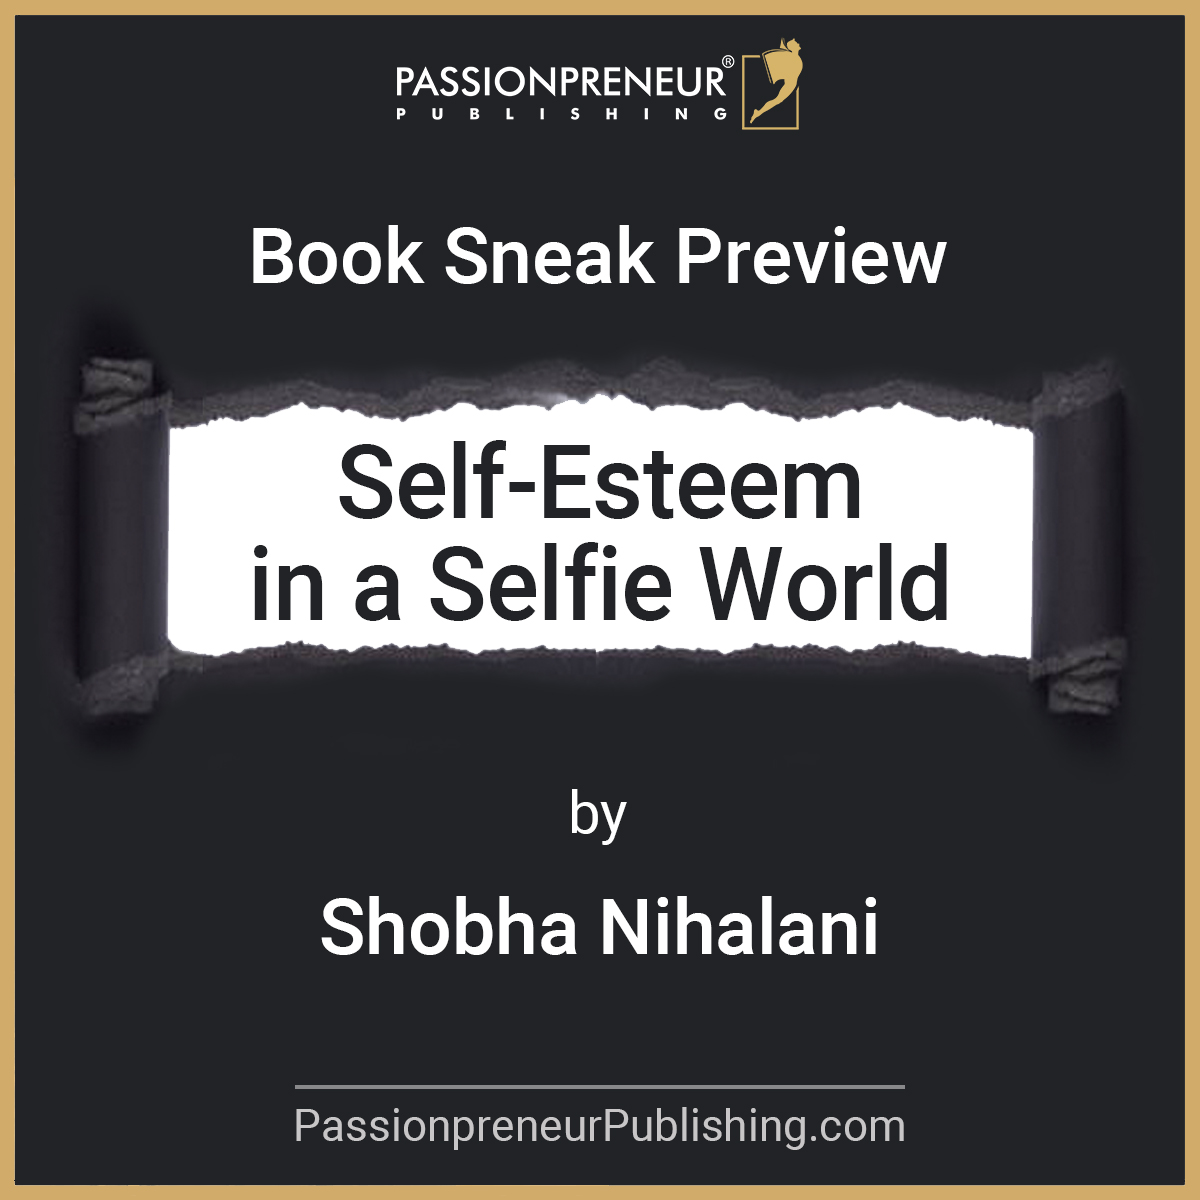 Book Sneak Preview Shobha Nihalani